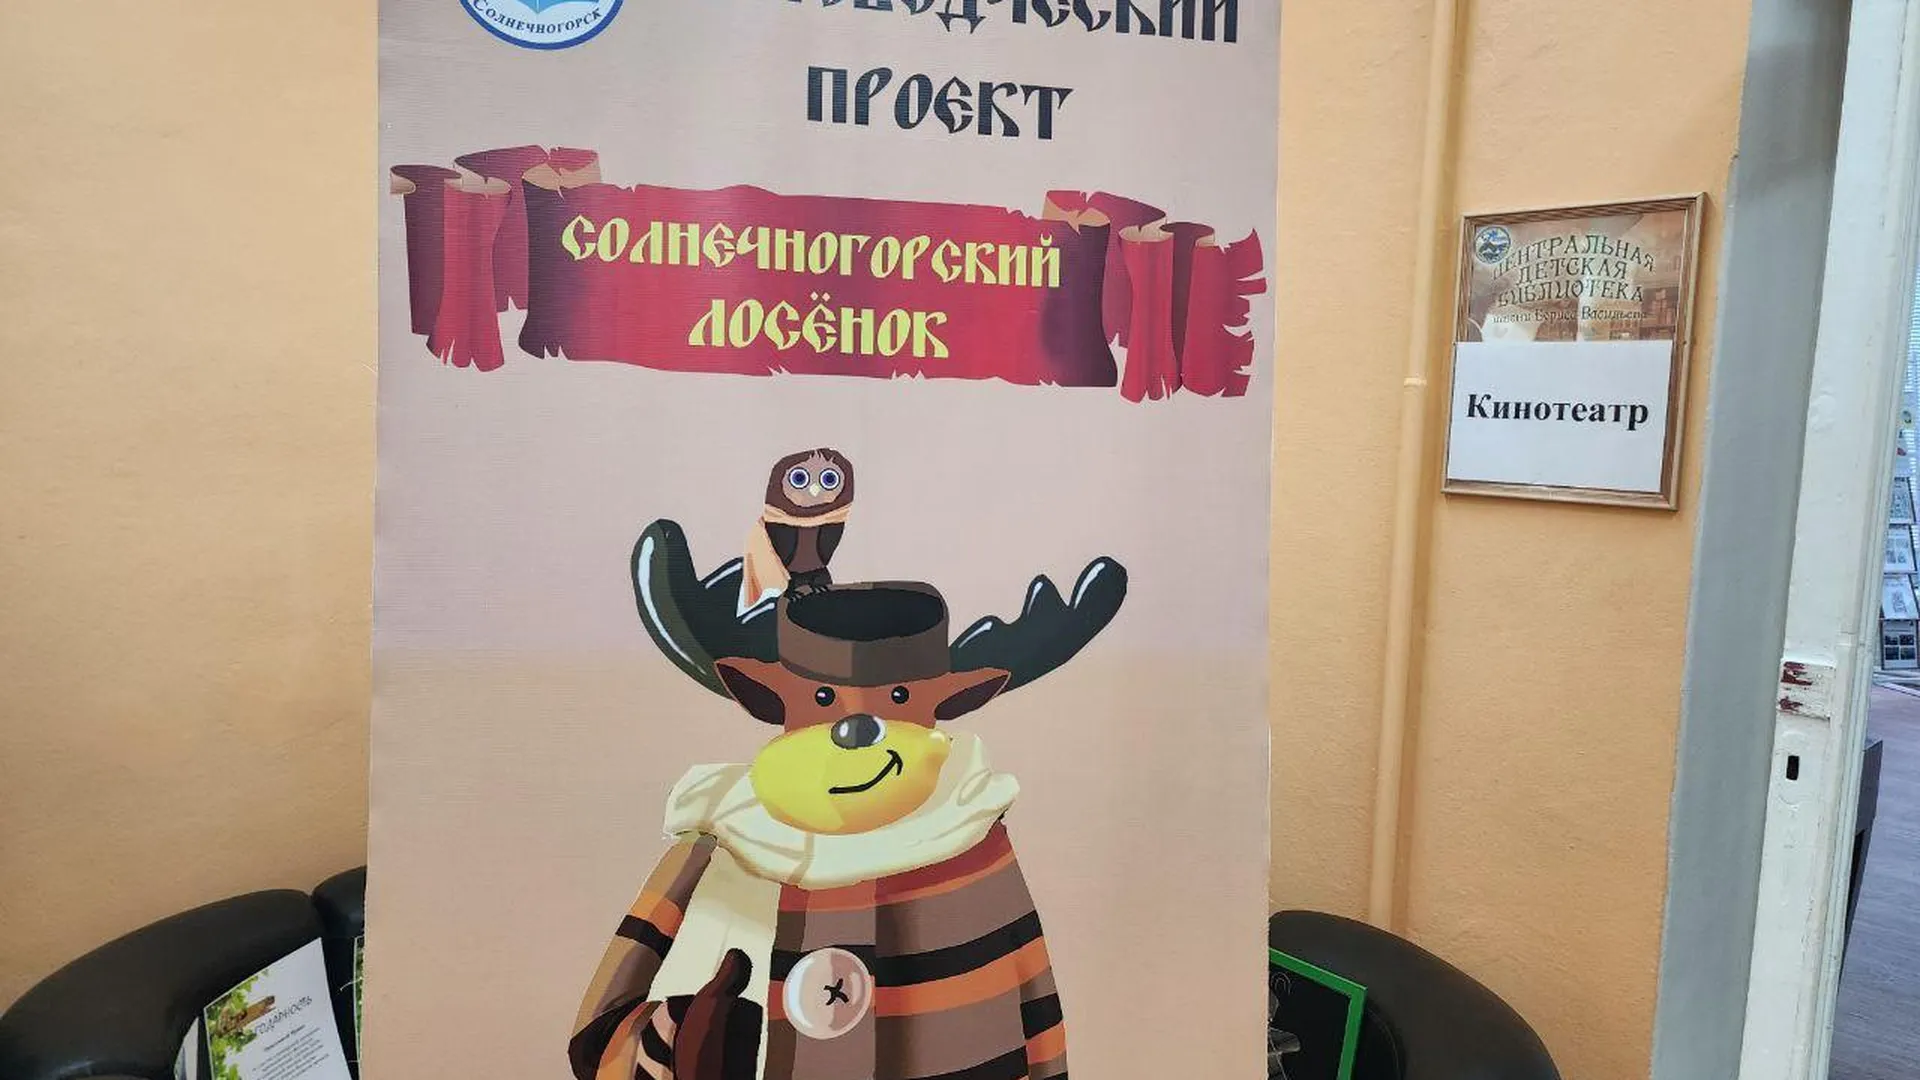 Краеведческий фестиваль «Солнечногорский лосенок» прошел в Подмосковье